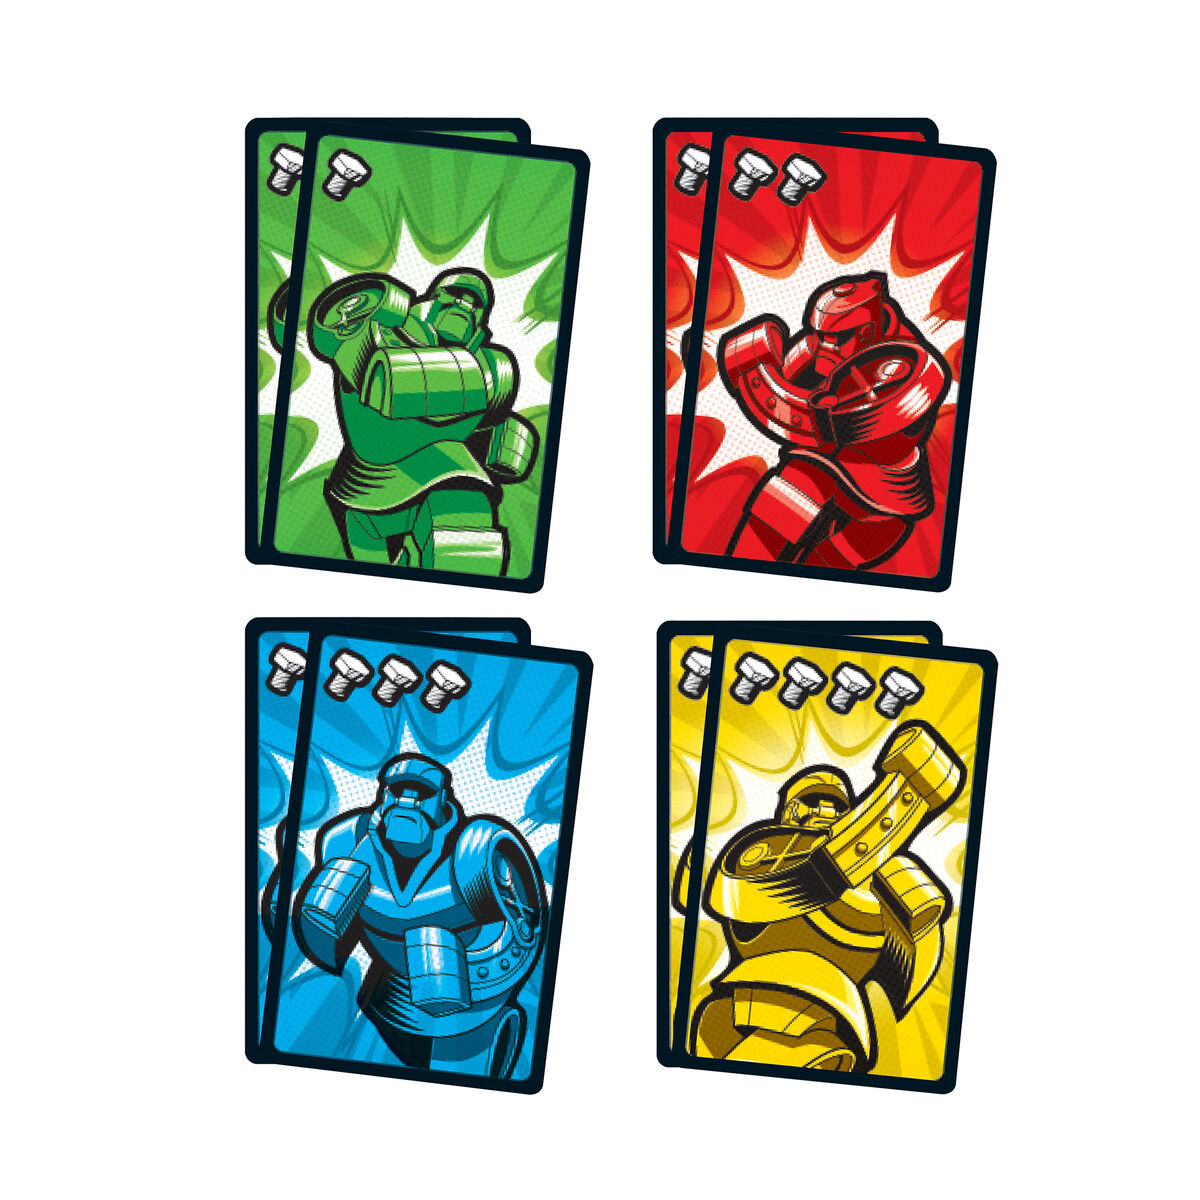 Kortspel Mattel Rock'Em Sock'Em Fight Cards-Leksaker och spel, Spel och tillbehör-Mattel-peaceofhome.se